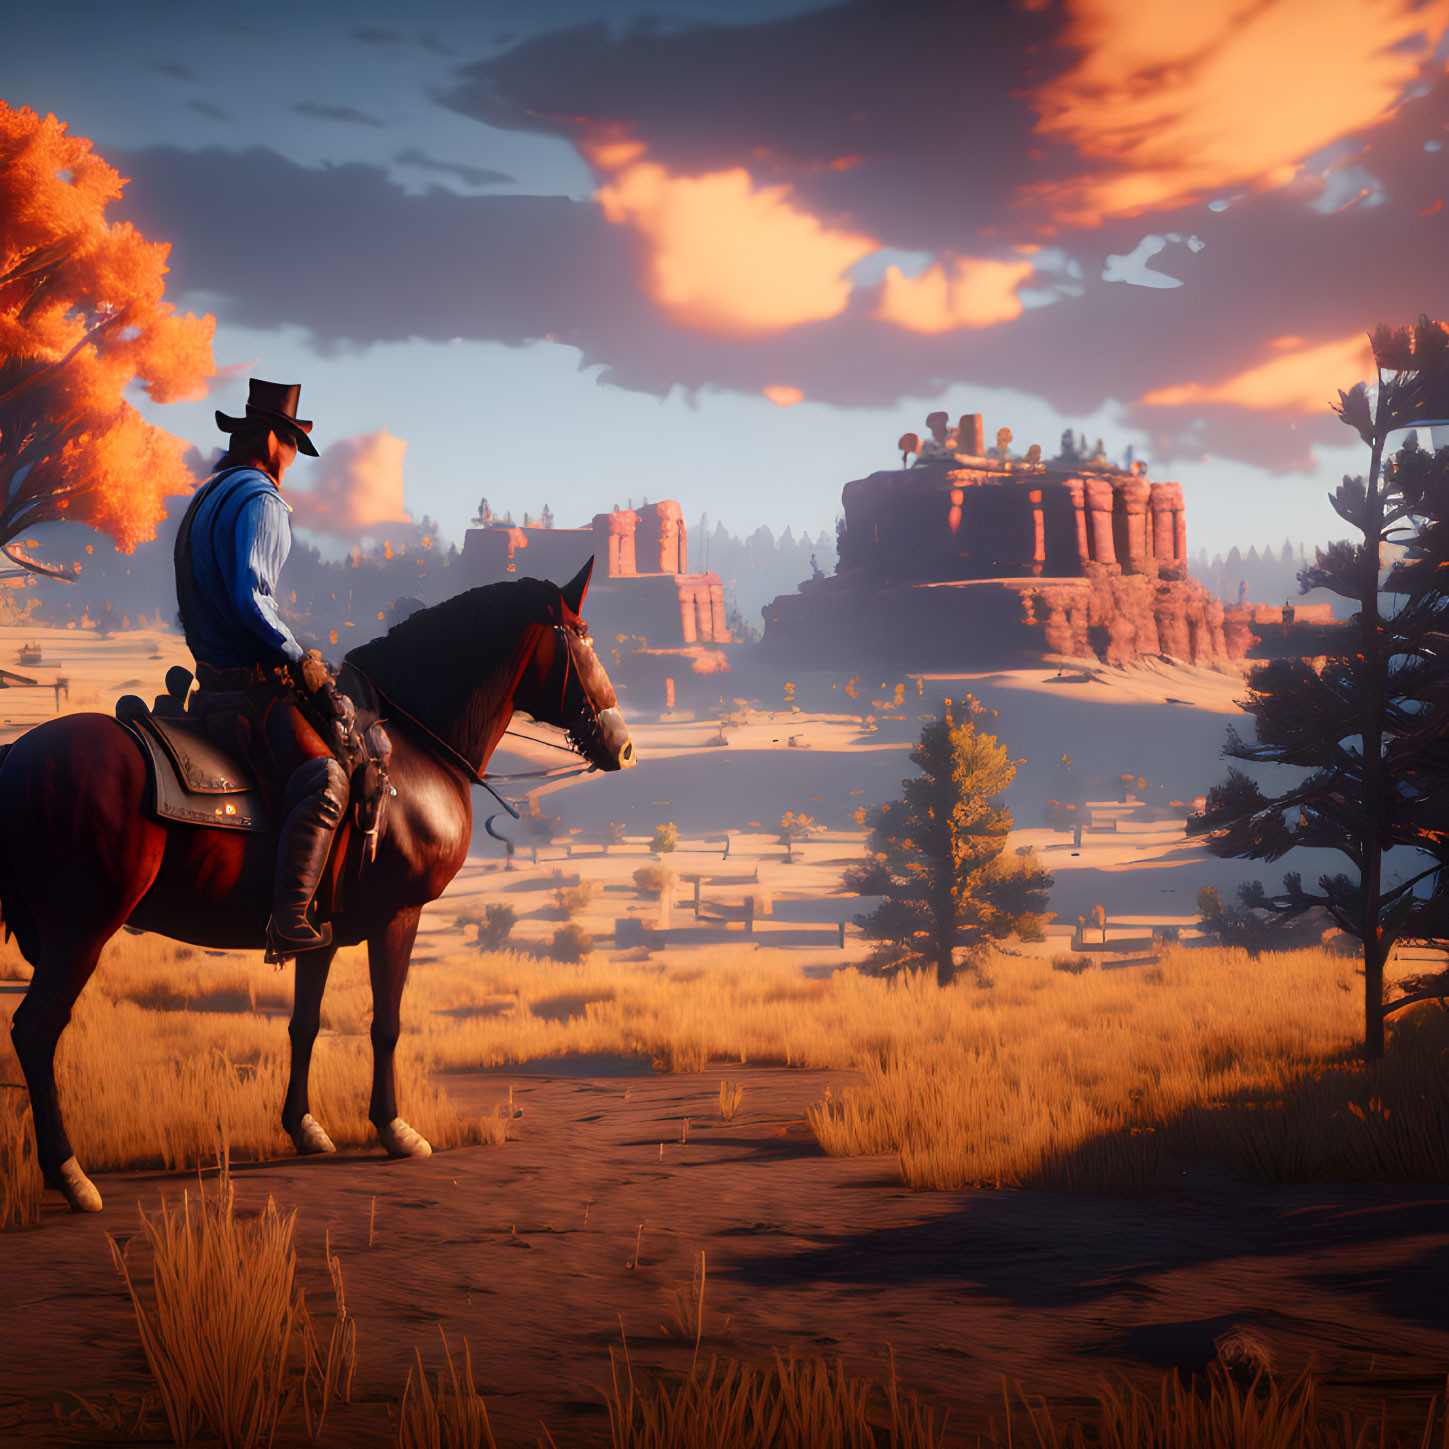 Cowboy on horseback admiring mesa at sunset in western landscape